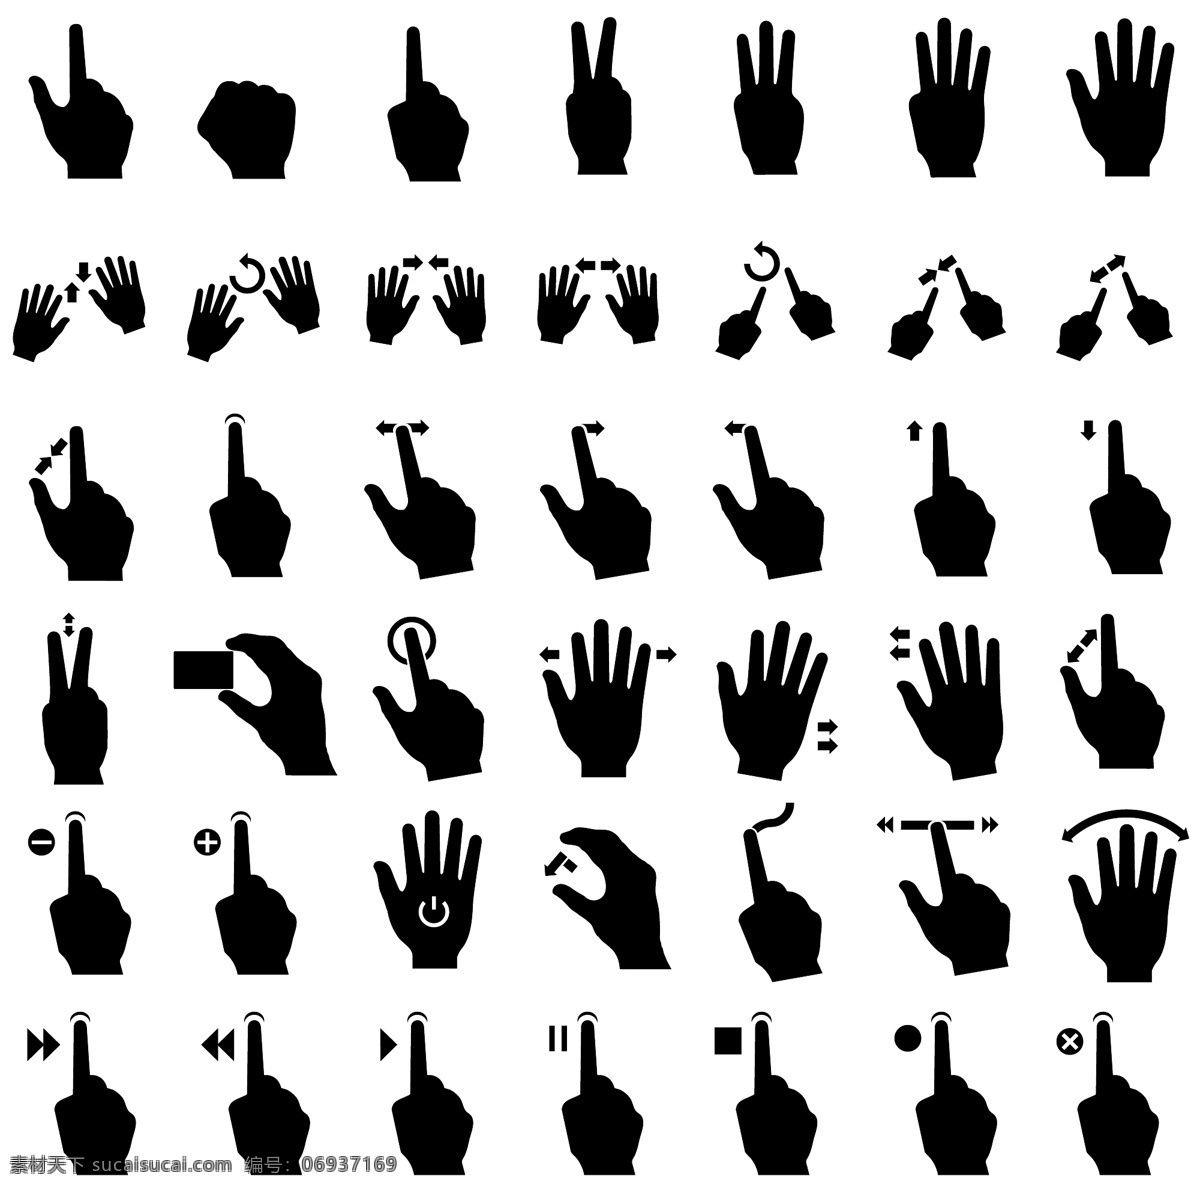 手势动作 手势 动作 指令 操作 说明 图标 简笔画 电子产品 单色 人物图库 生活人物